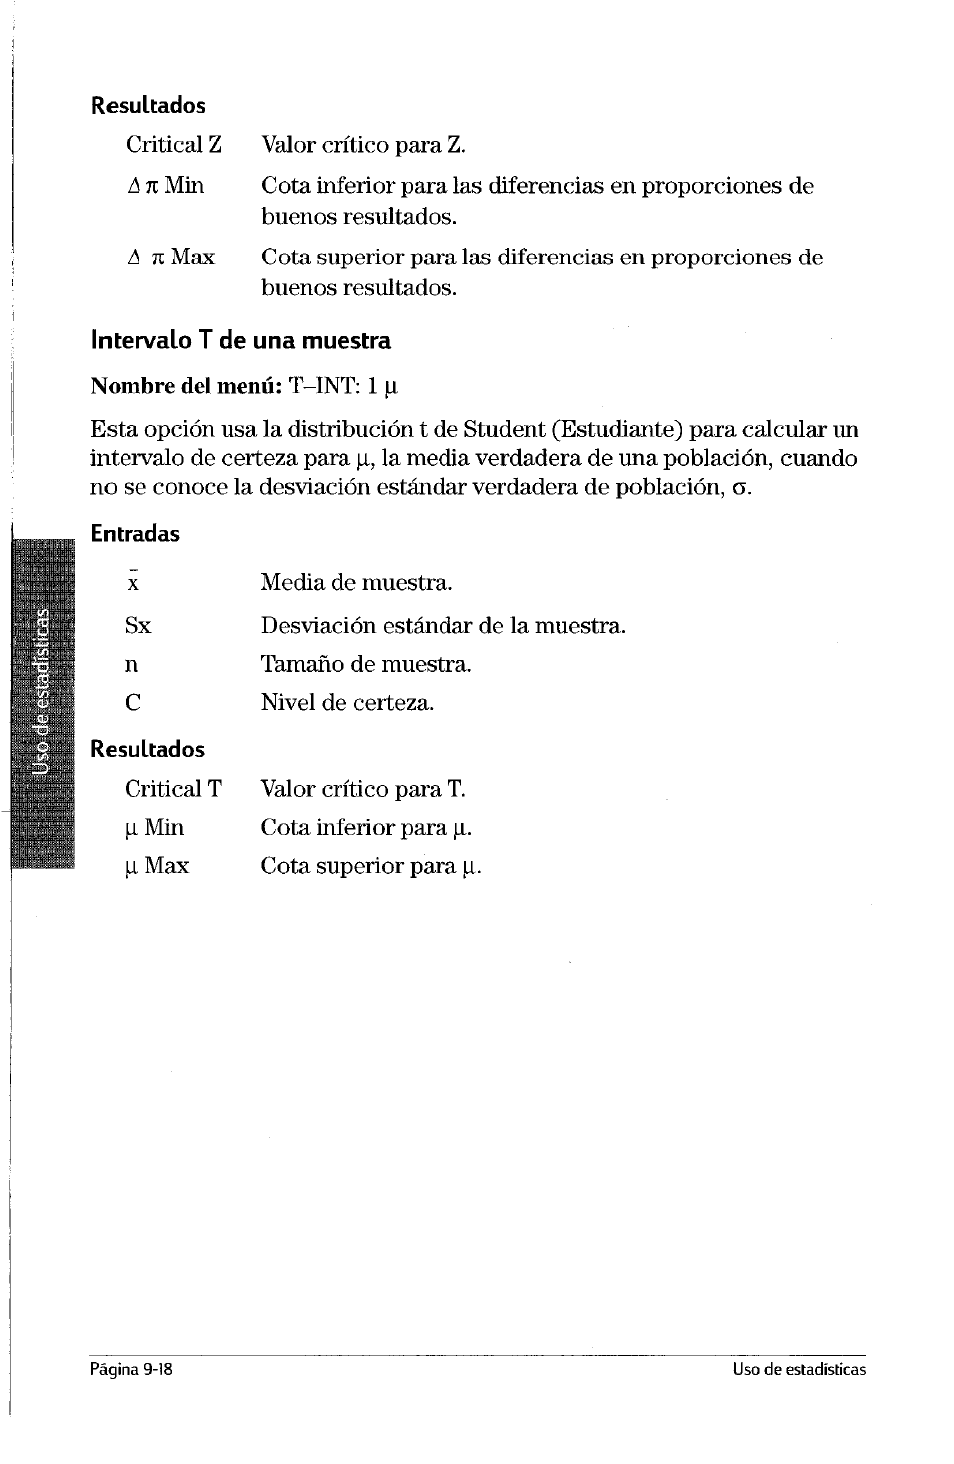 Intervalo t de una muestra | HP Calculadora Gráfica HP 49g Manual del usuario | Página 193 / 253